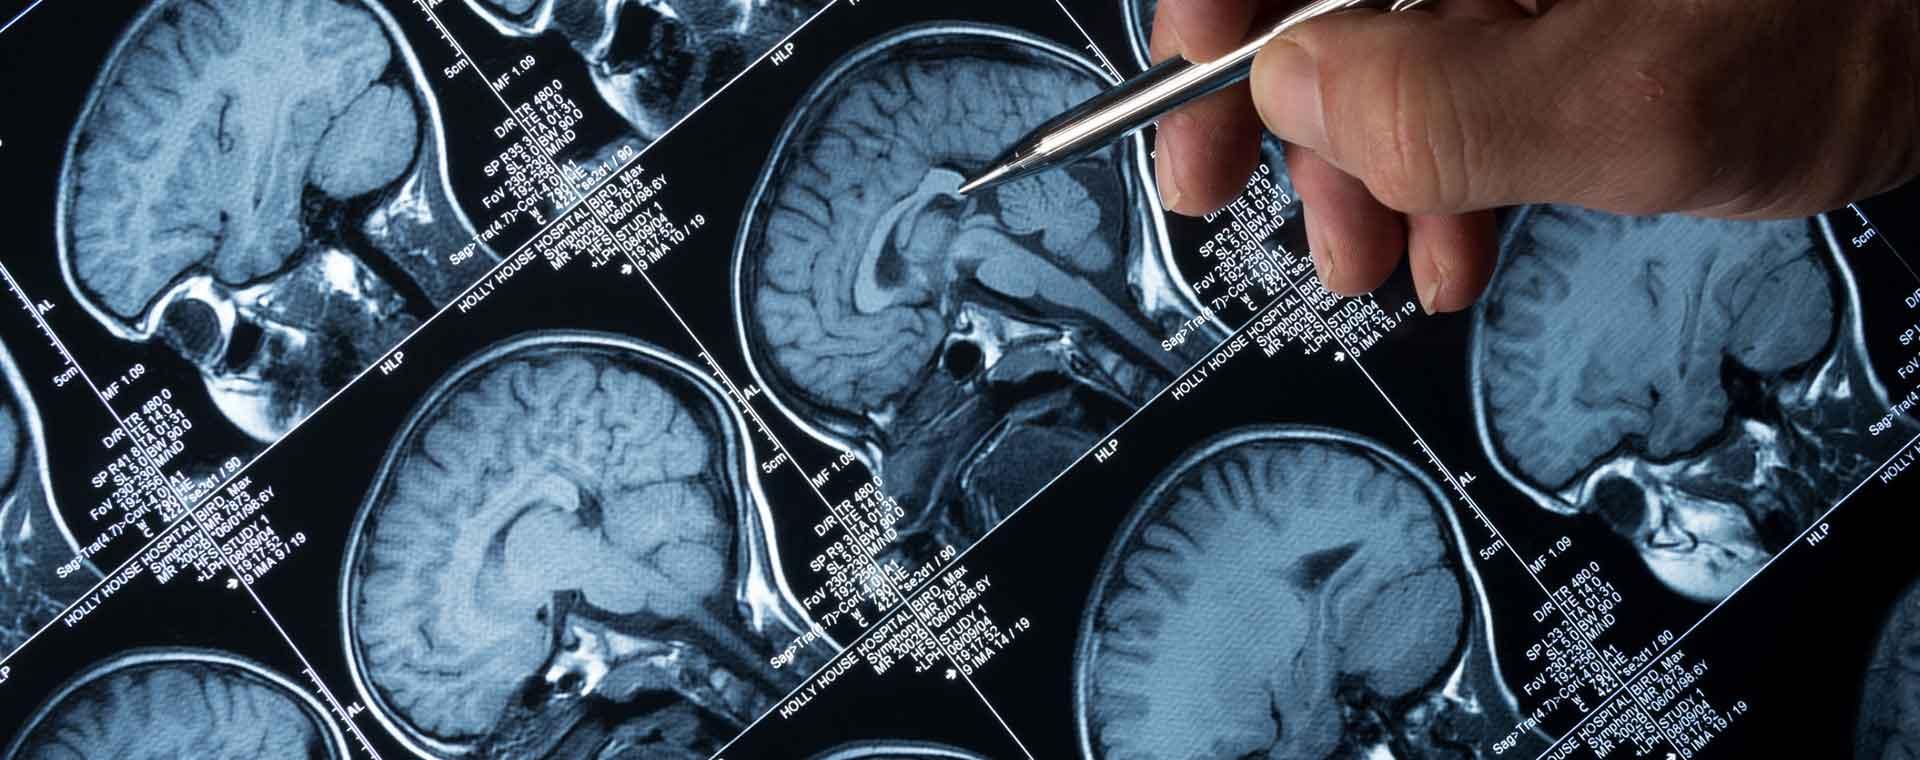 Imagerie cérébrale : percer les mystères du cerveau | Fondation ...